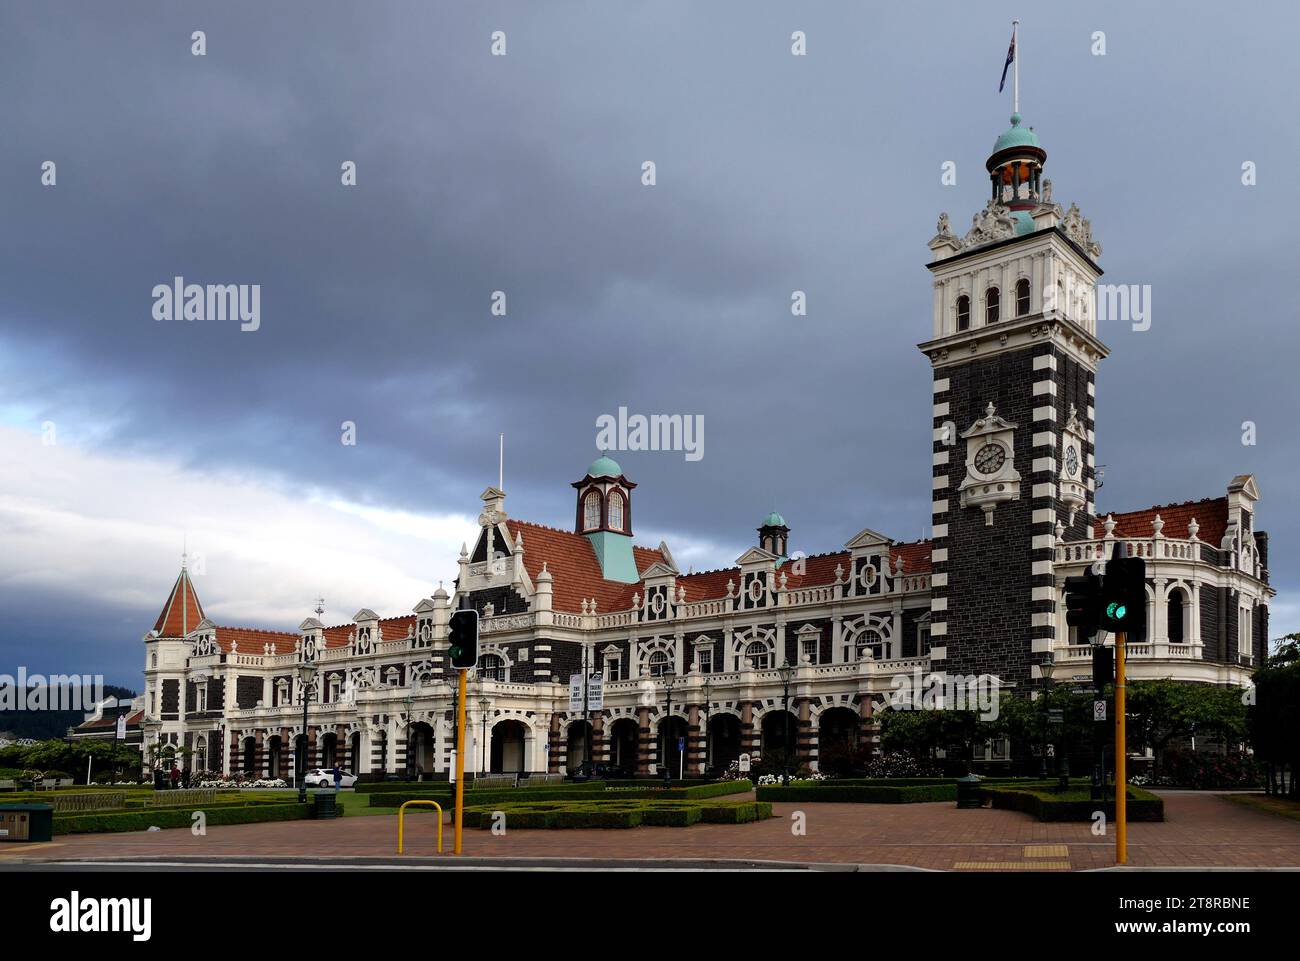 Gare de Dunedin. NZ, émerveillez-vous devant la taille, l'architecture et les riches embellissements de la gare de Dunedin - c'est la plus grande 'Maison en pain d'épice' que vous verrez jamais Banque D'Images